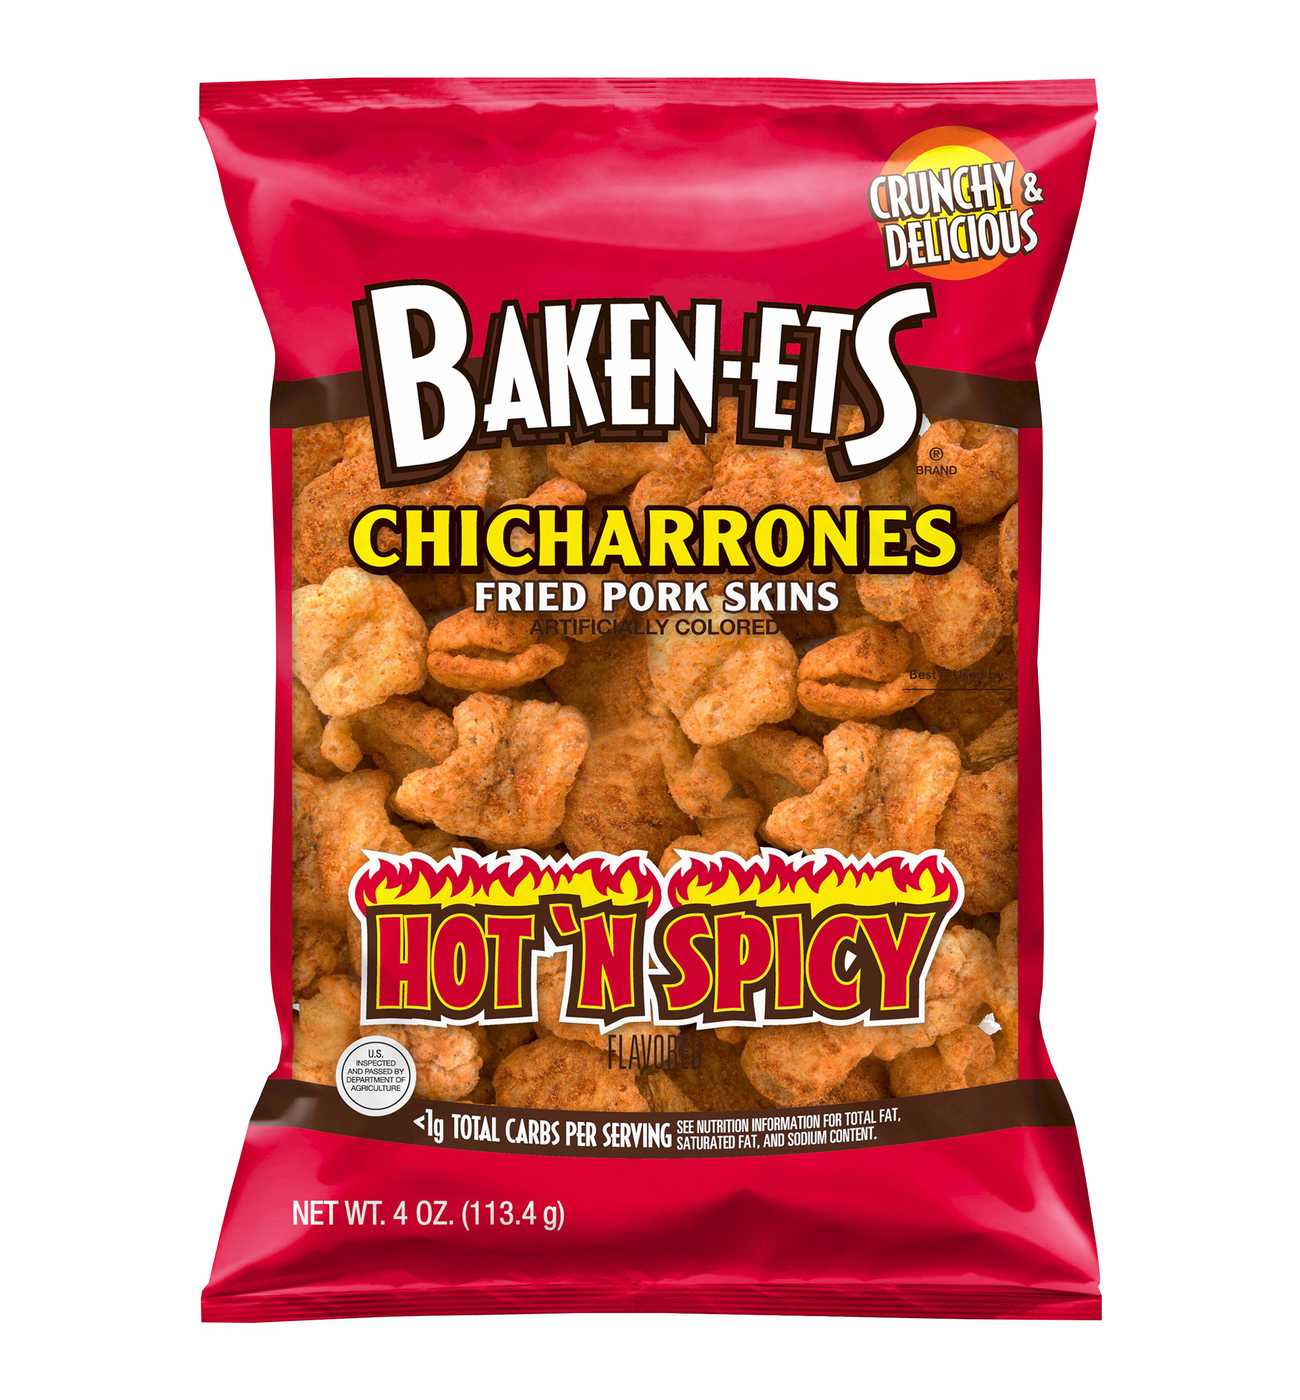 Baken-Ets Chicharrones Hot 'n Spicy Fried Pork Rinds; image 1 of 2